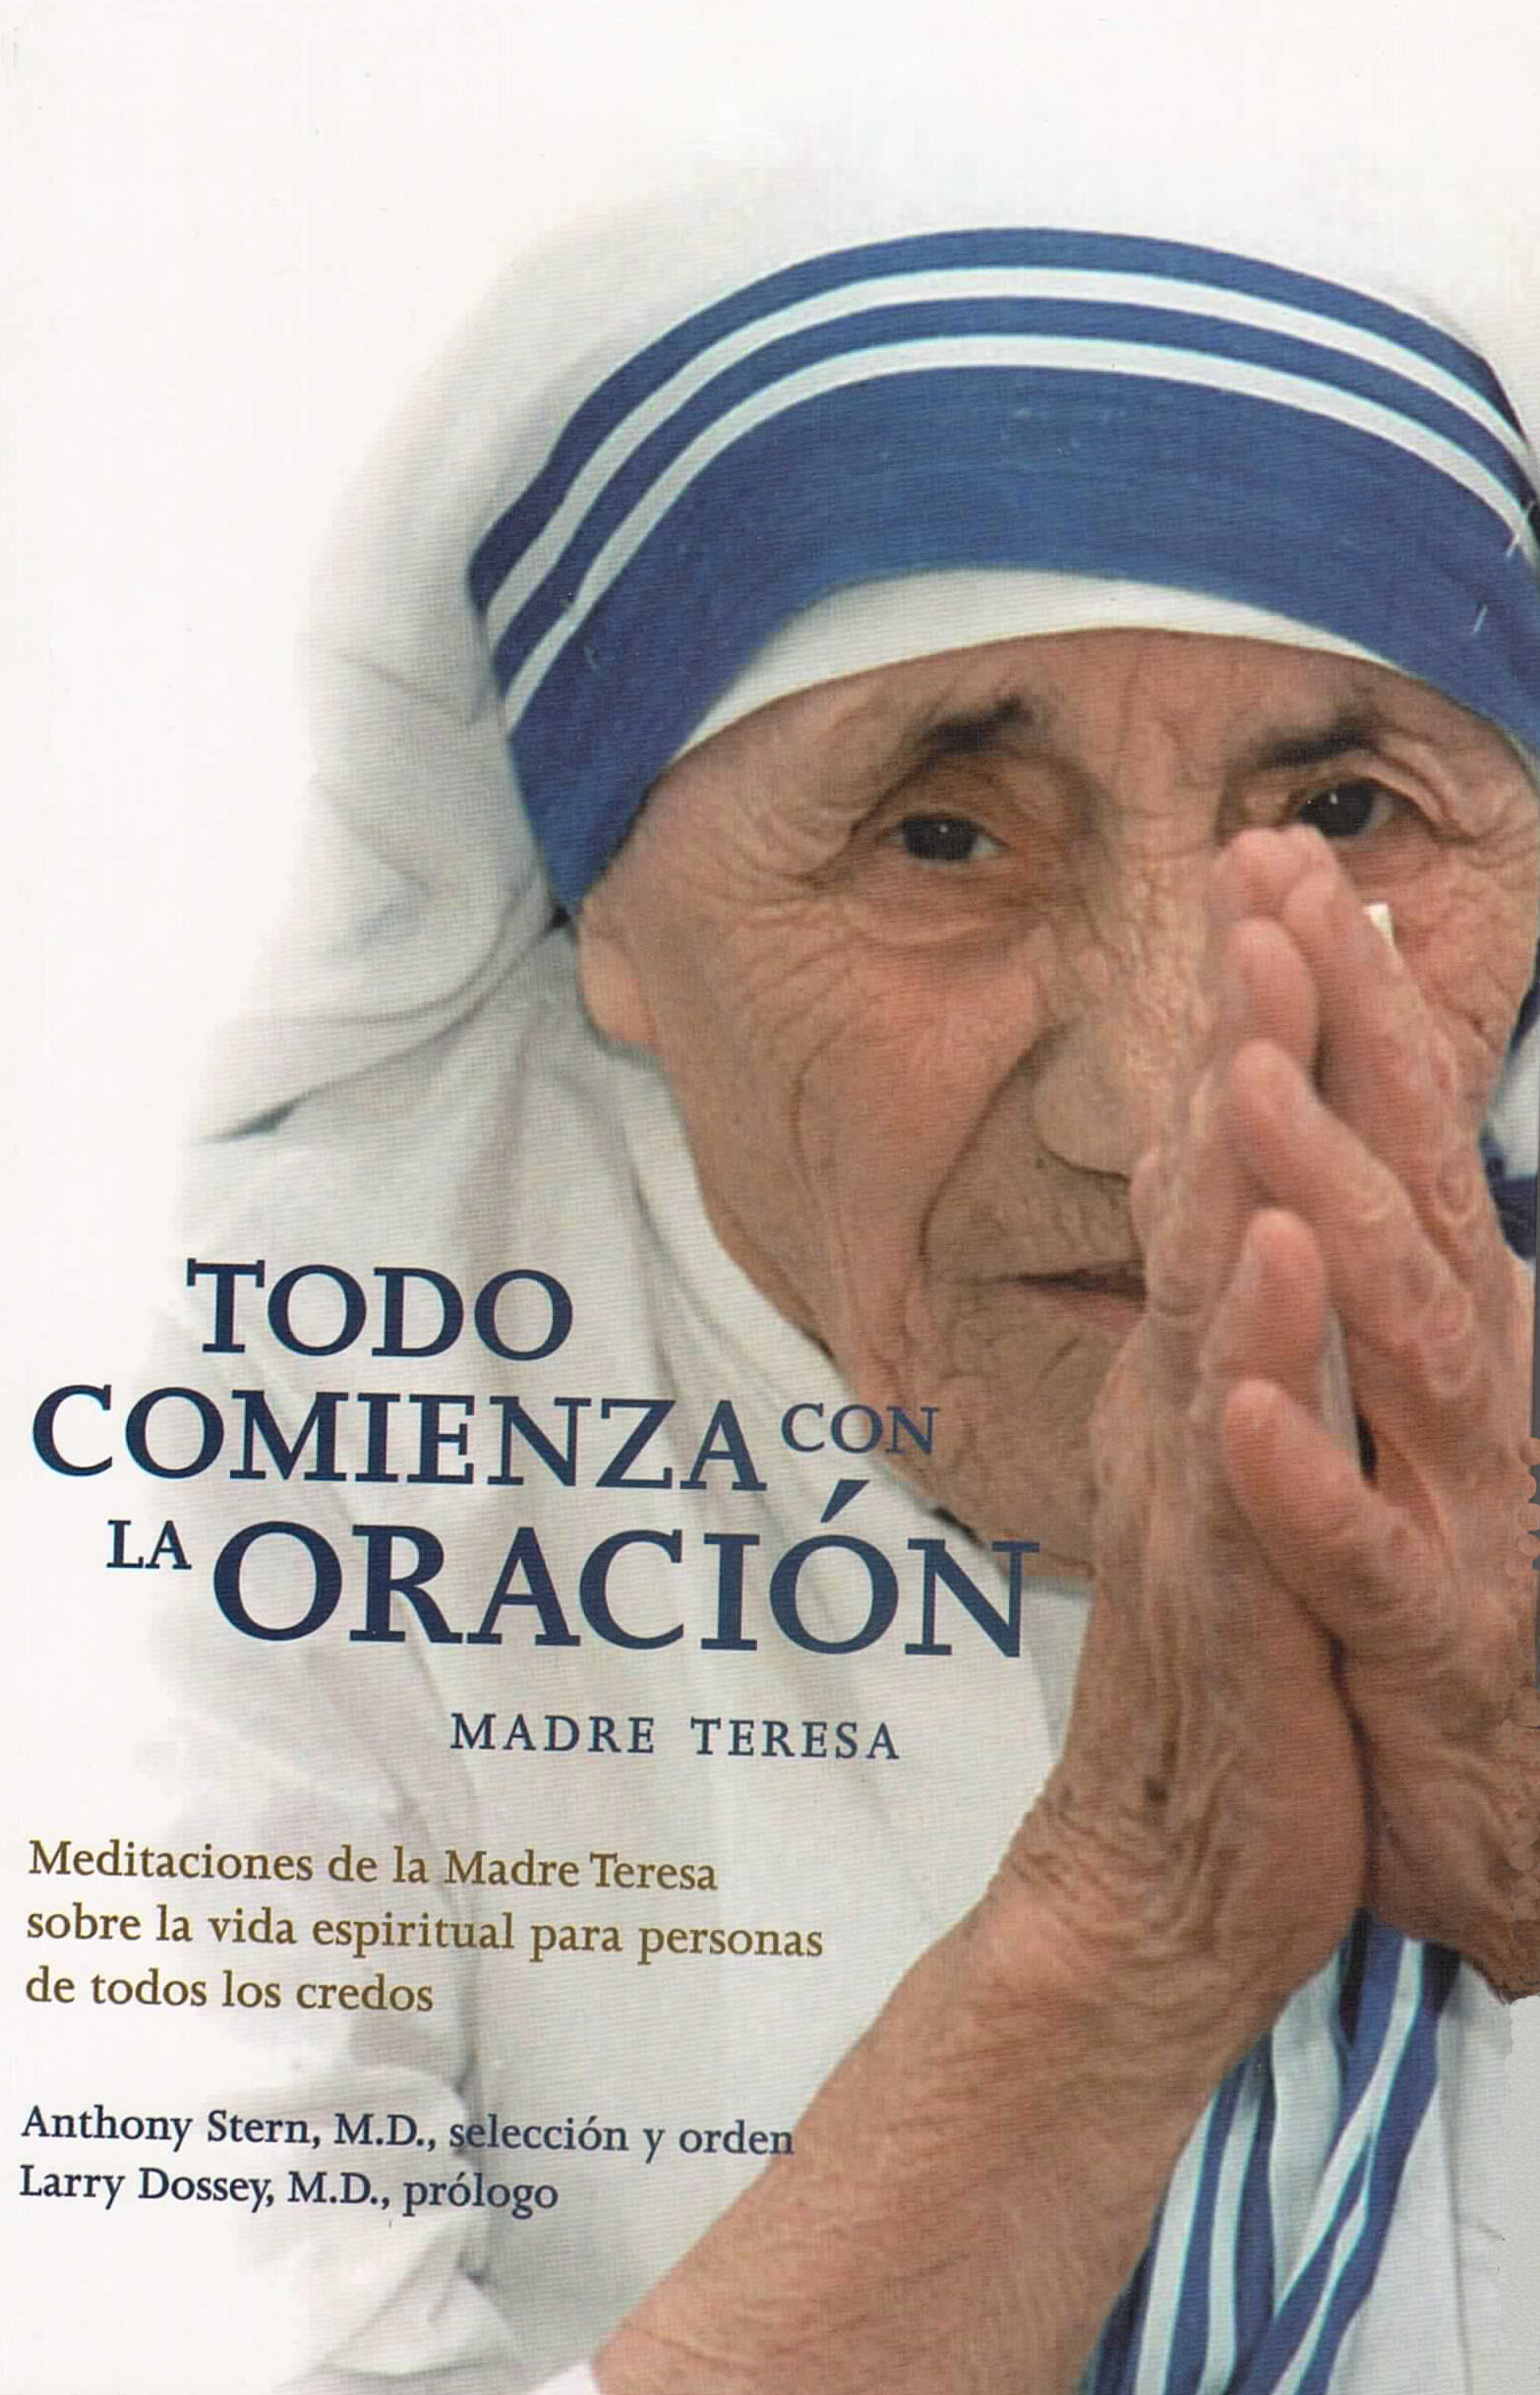 Todo comienza con la oracion. Madre Teresa